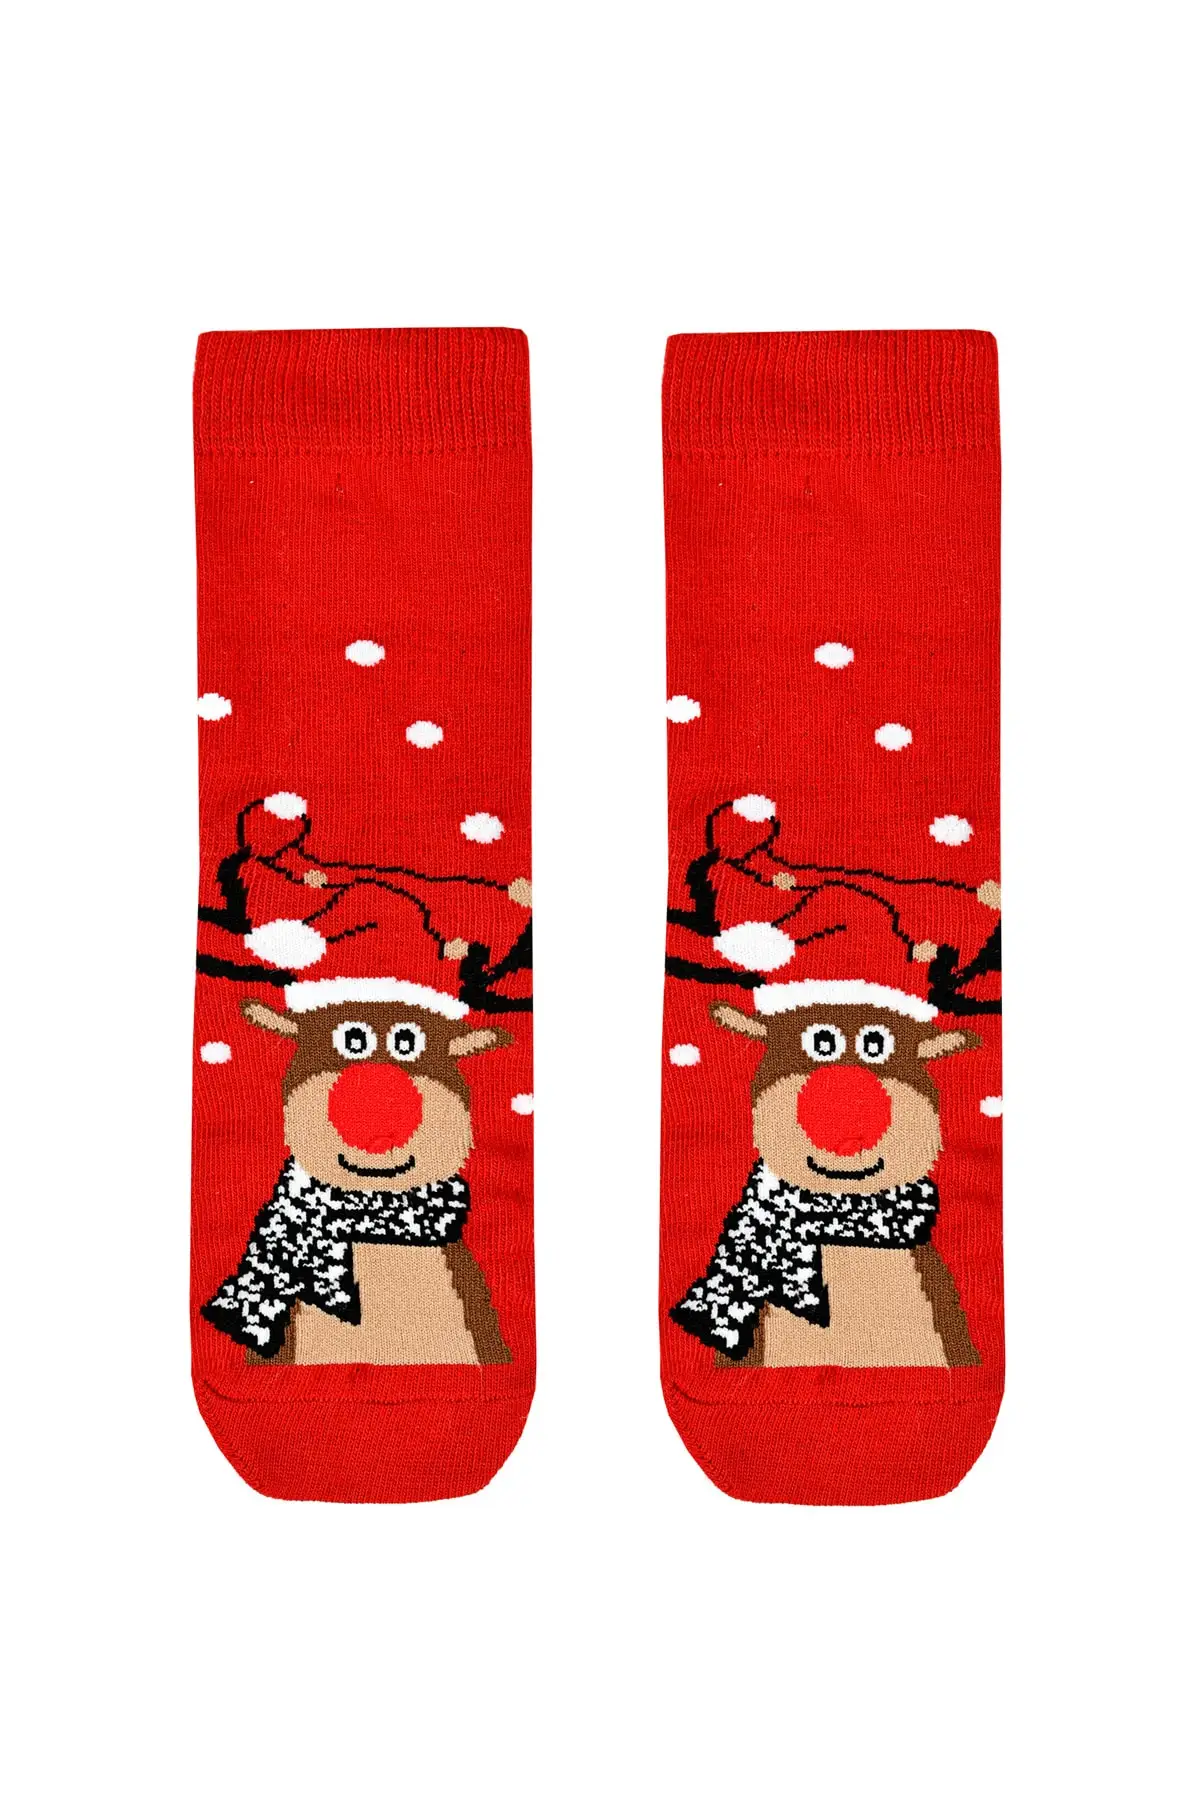 

Deer patterned christmas themed children's socks cotton-spandex red single cotton Polyester printed medium socks inner